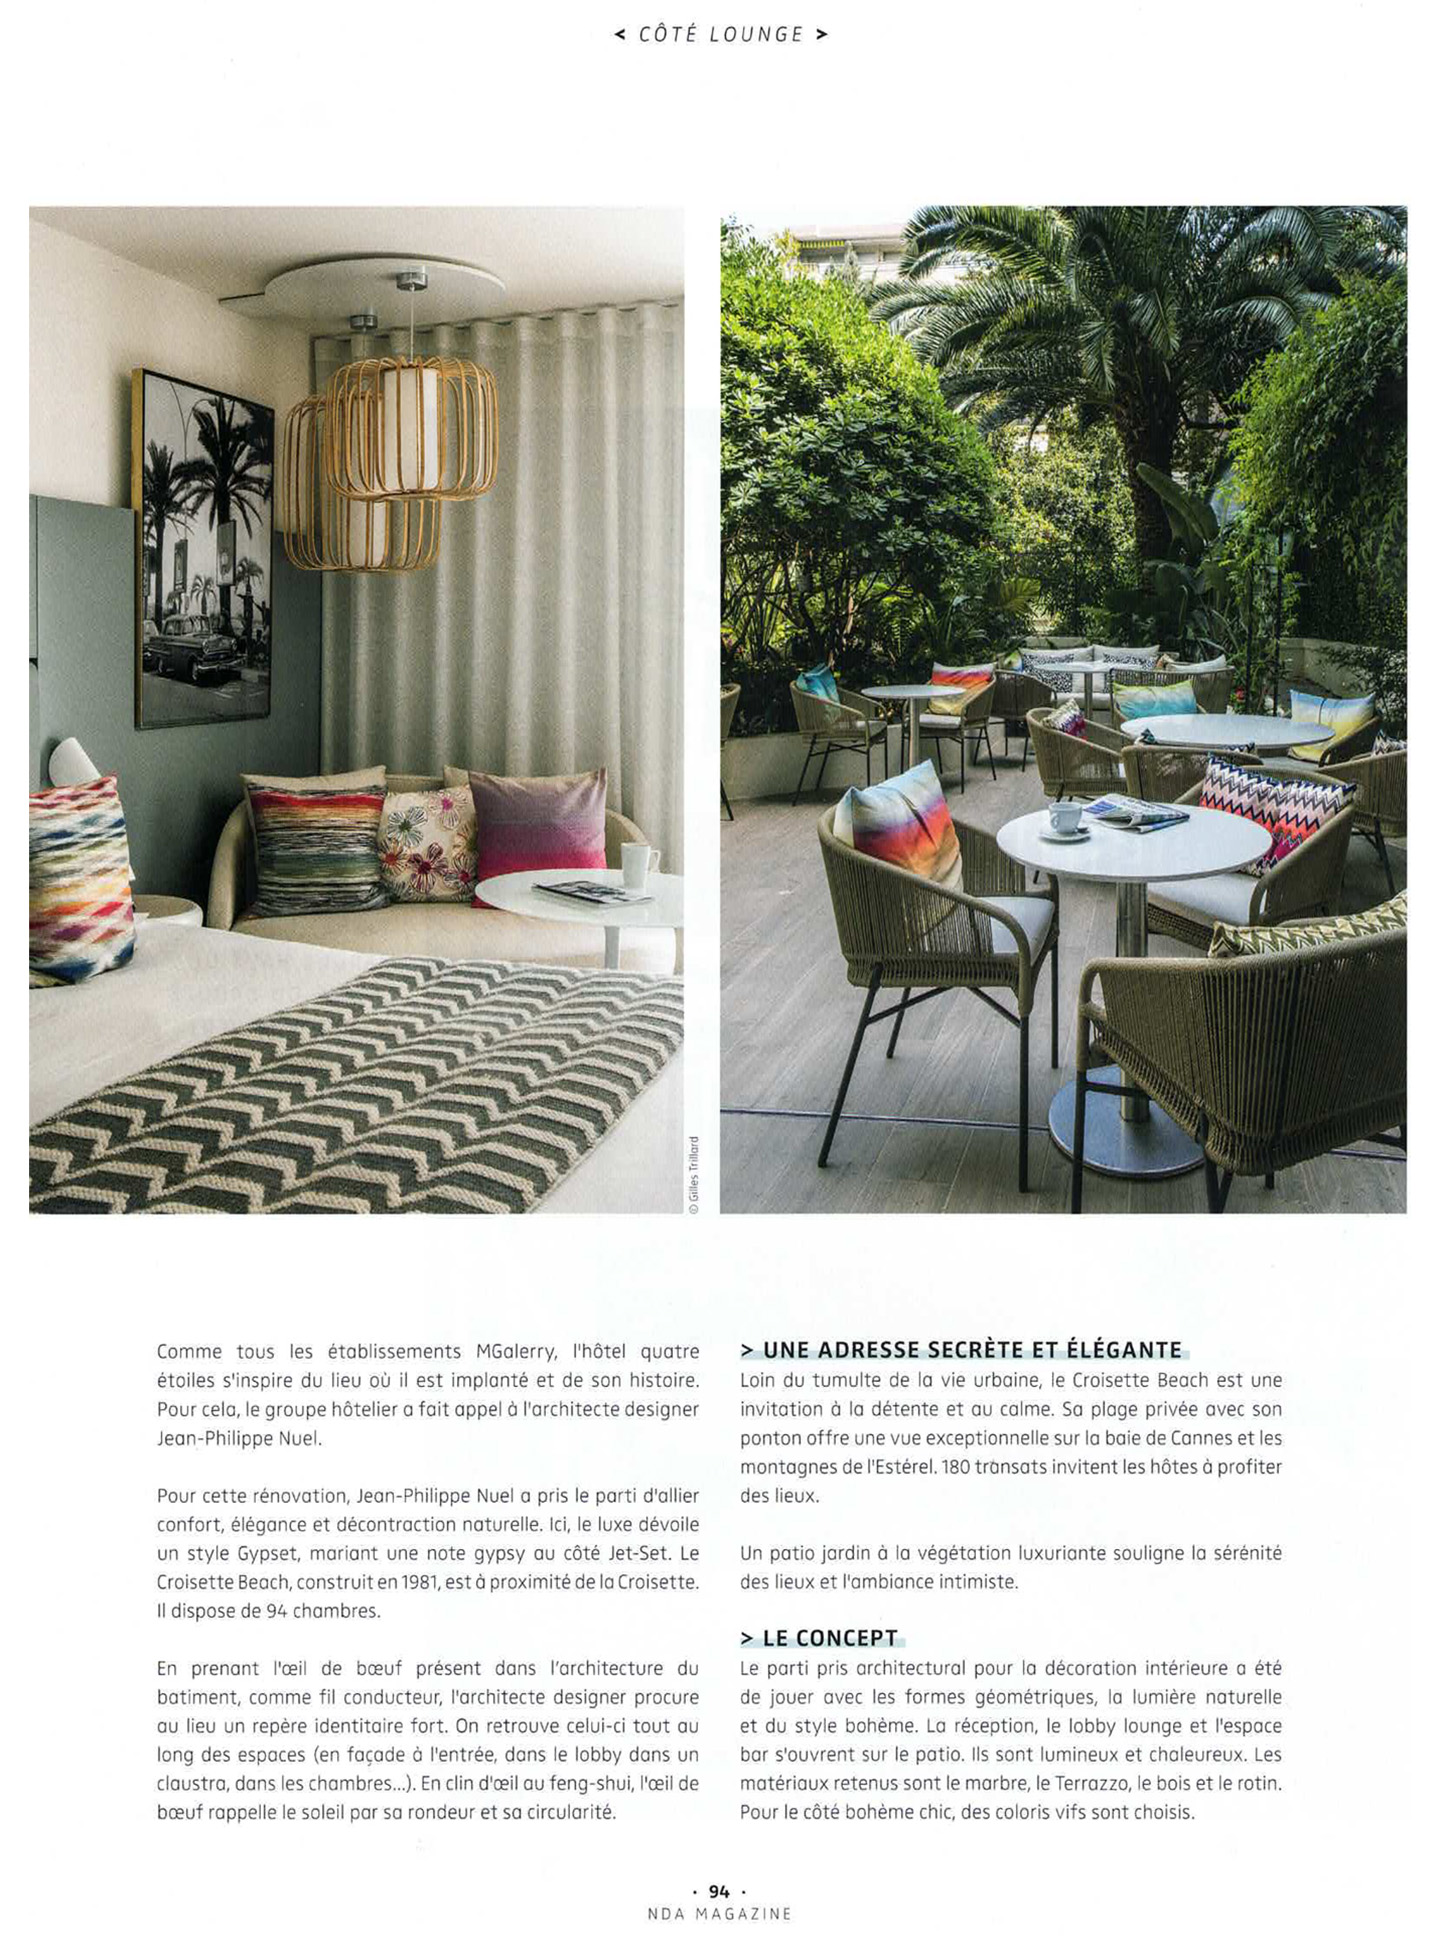 Article sur le croisette beach cannes réalisé par le studio jean-Philippe Nuel dans le magazine nda, nouvel hotel lifestyle, architecture d'intérieur de luxe, cannes, french riviera